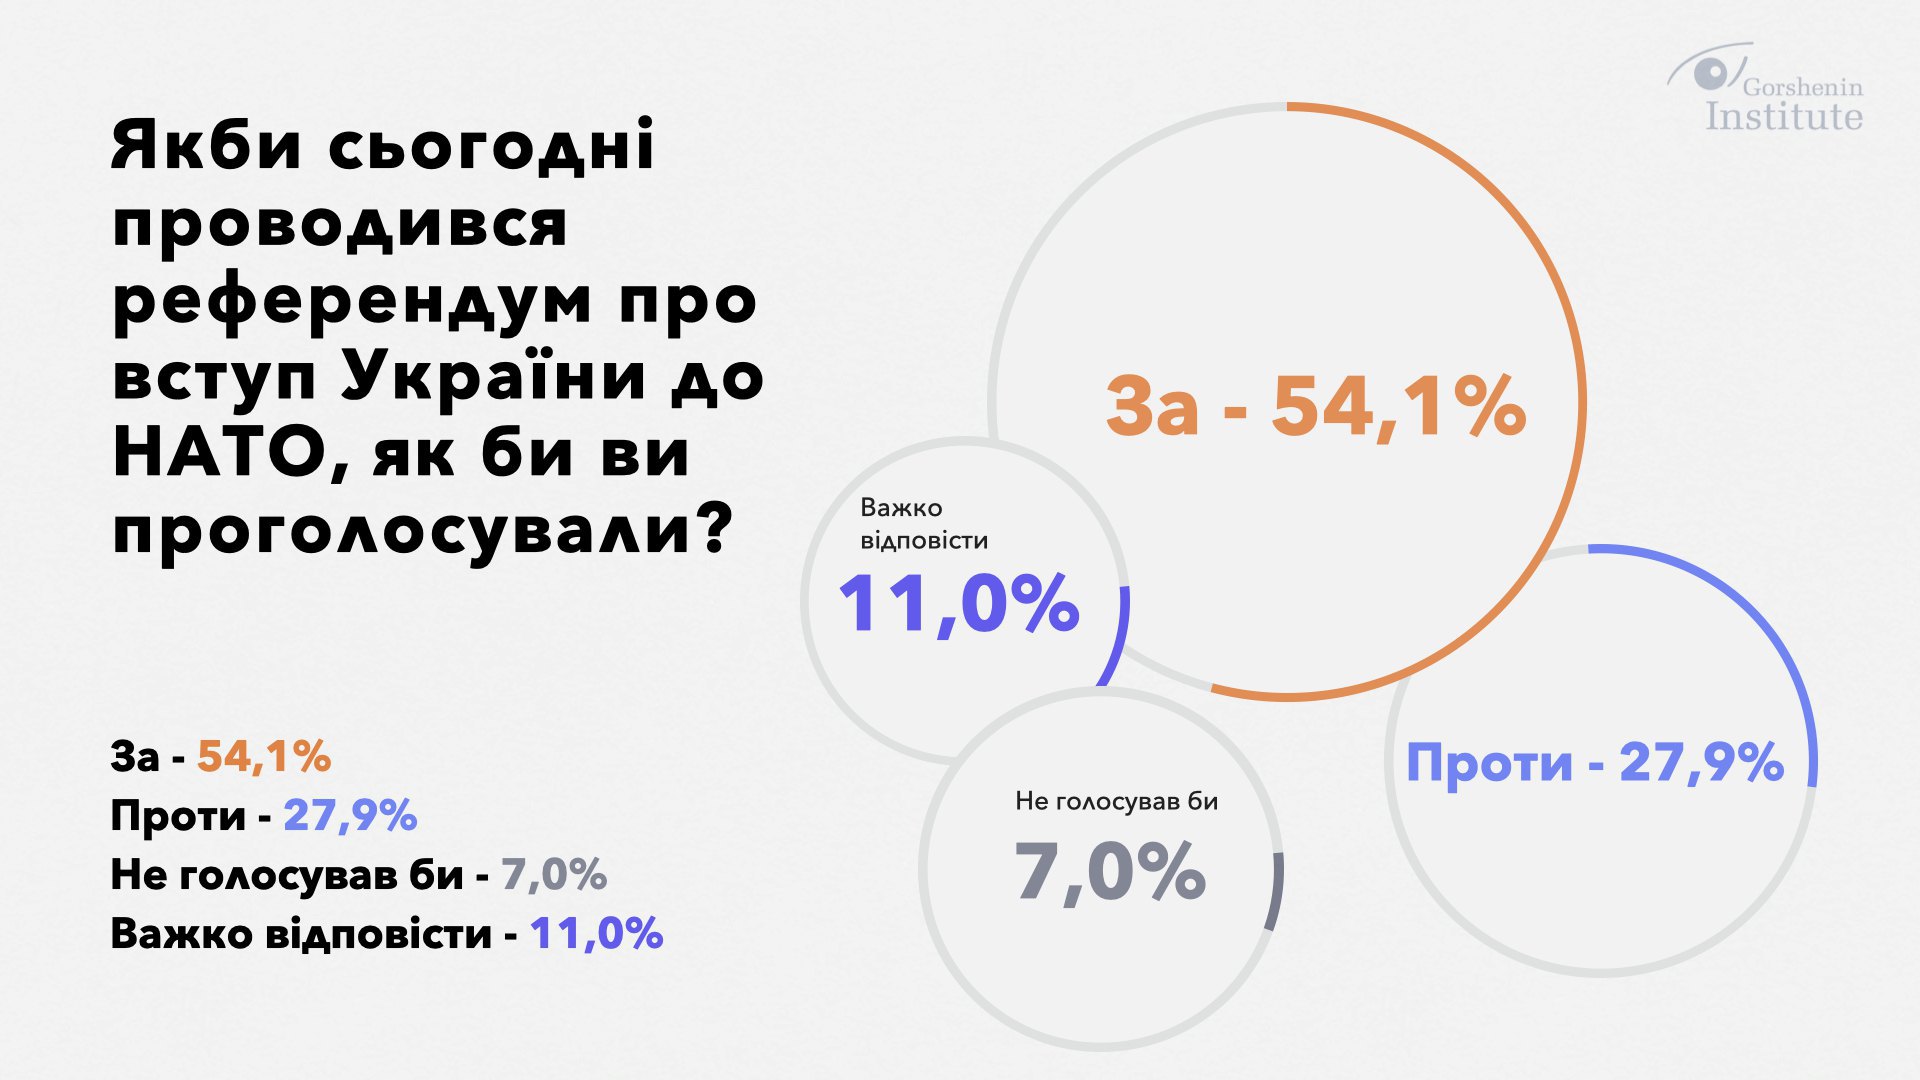 우크라이나의 나토(북대서양조약기구) 가입 찬반 여부를 묻는 질문에 응답자 54.1%가 “찬성”했다. 고르셰닌연구소 홈페이지 캡처